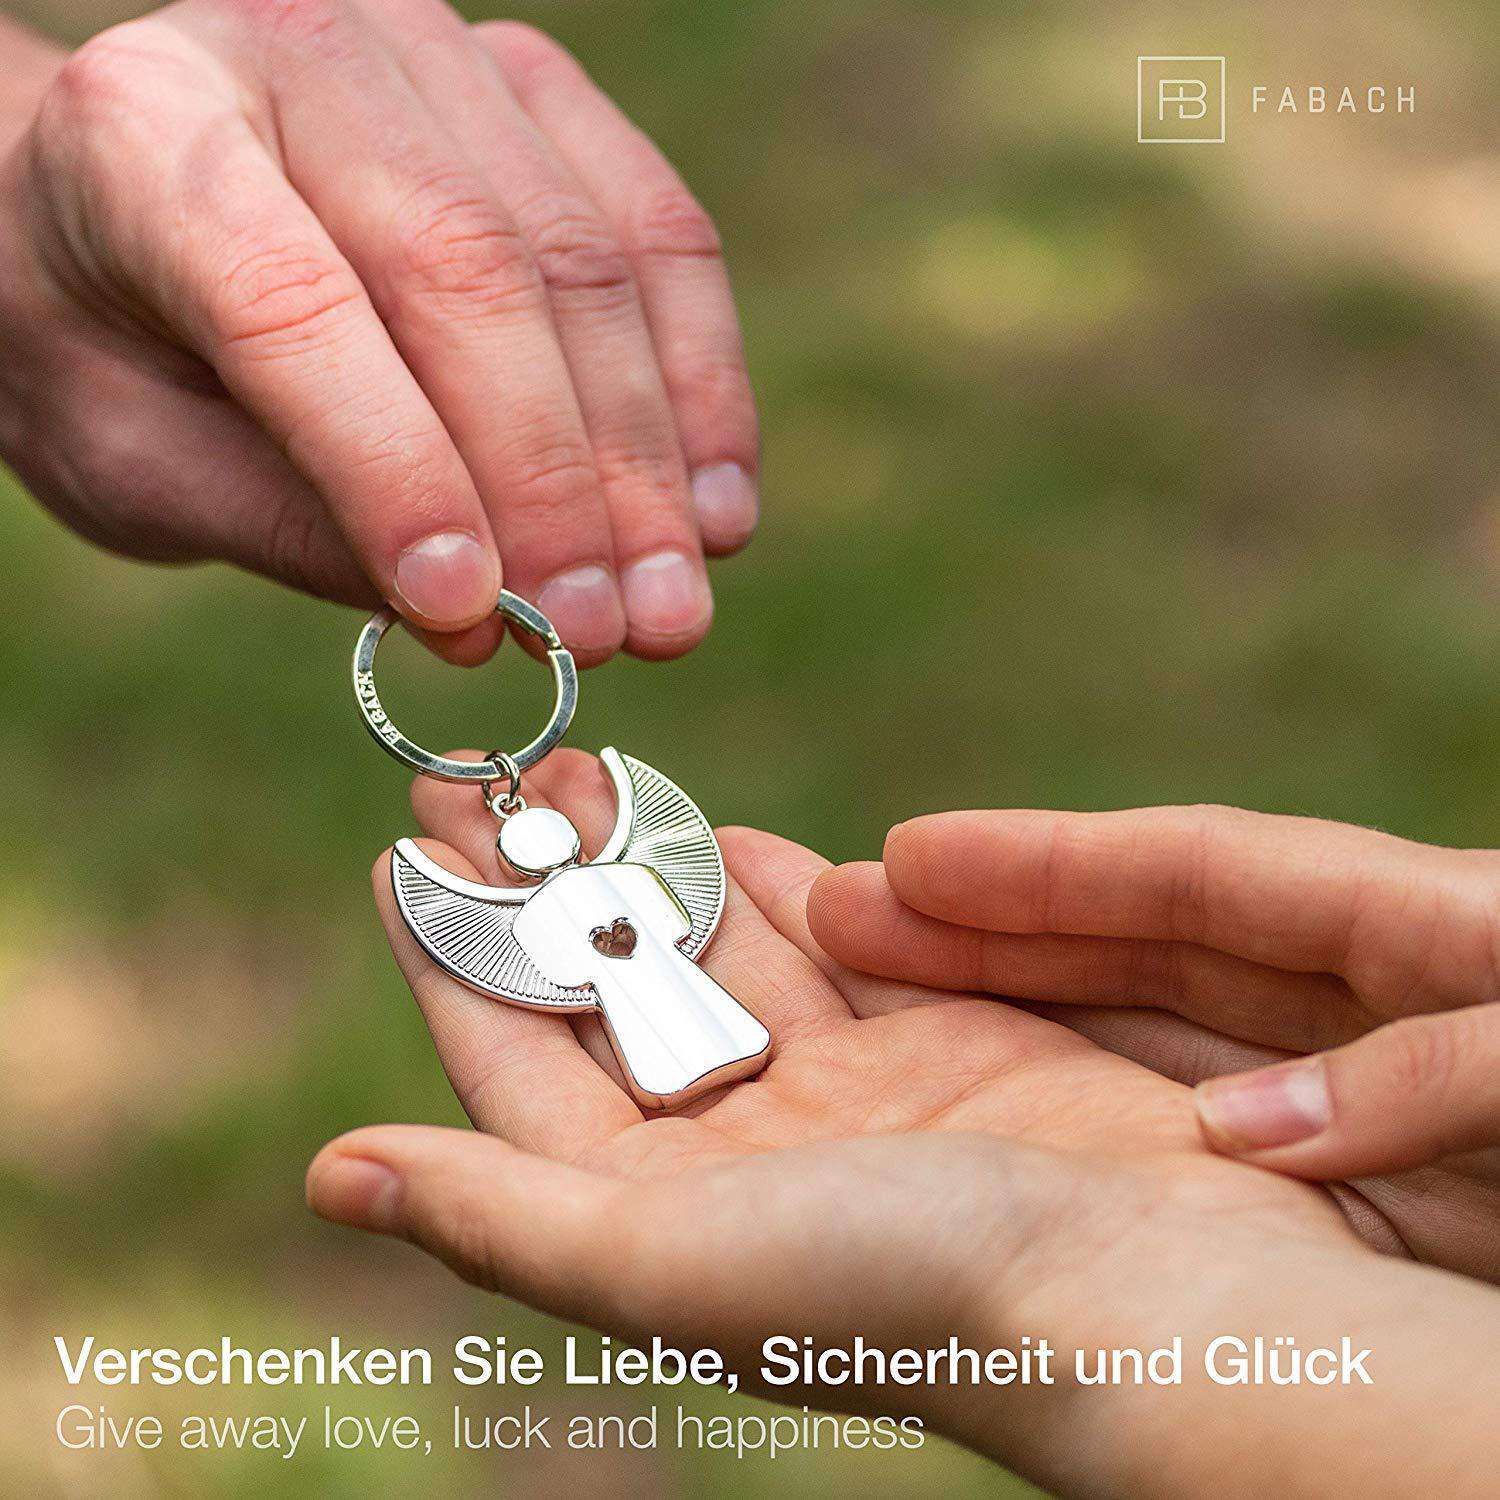 "Pikto" Schutzengel Schlüsselanhänger mit Herz - Engel Glücksbringer - FABACH